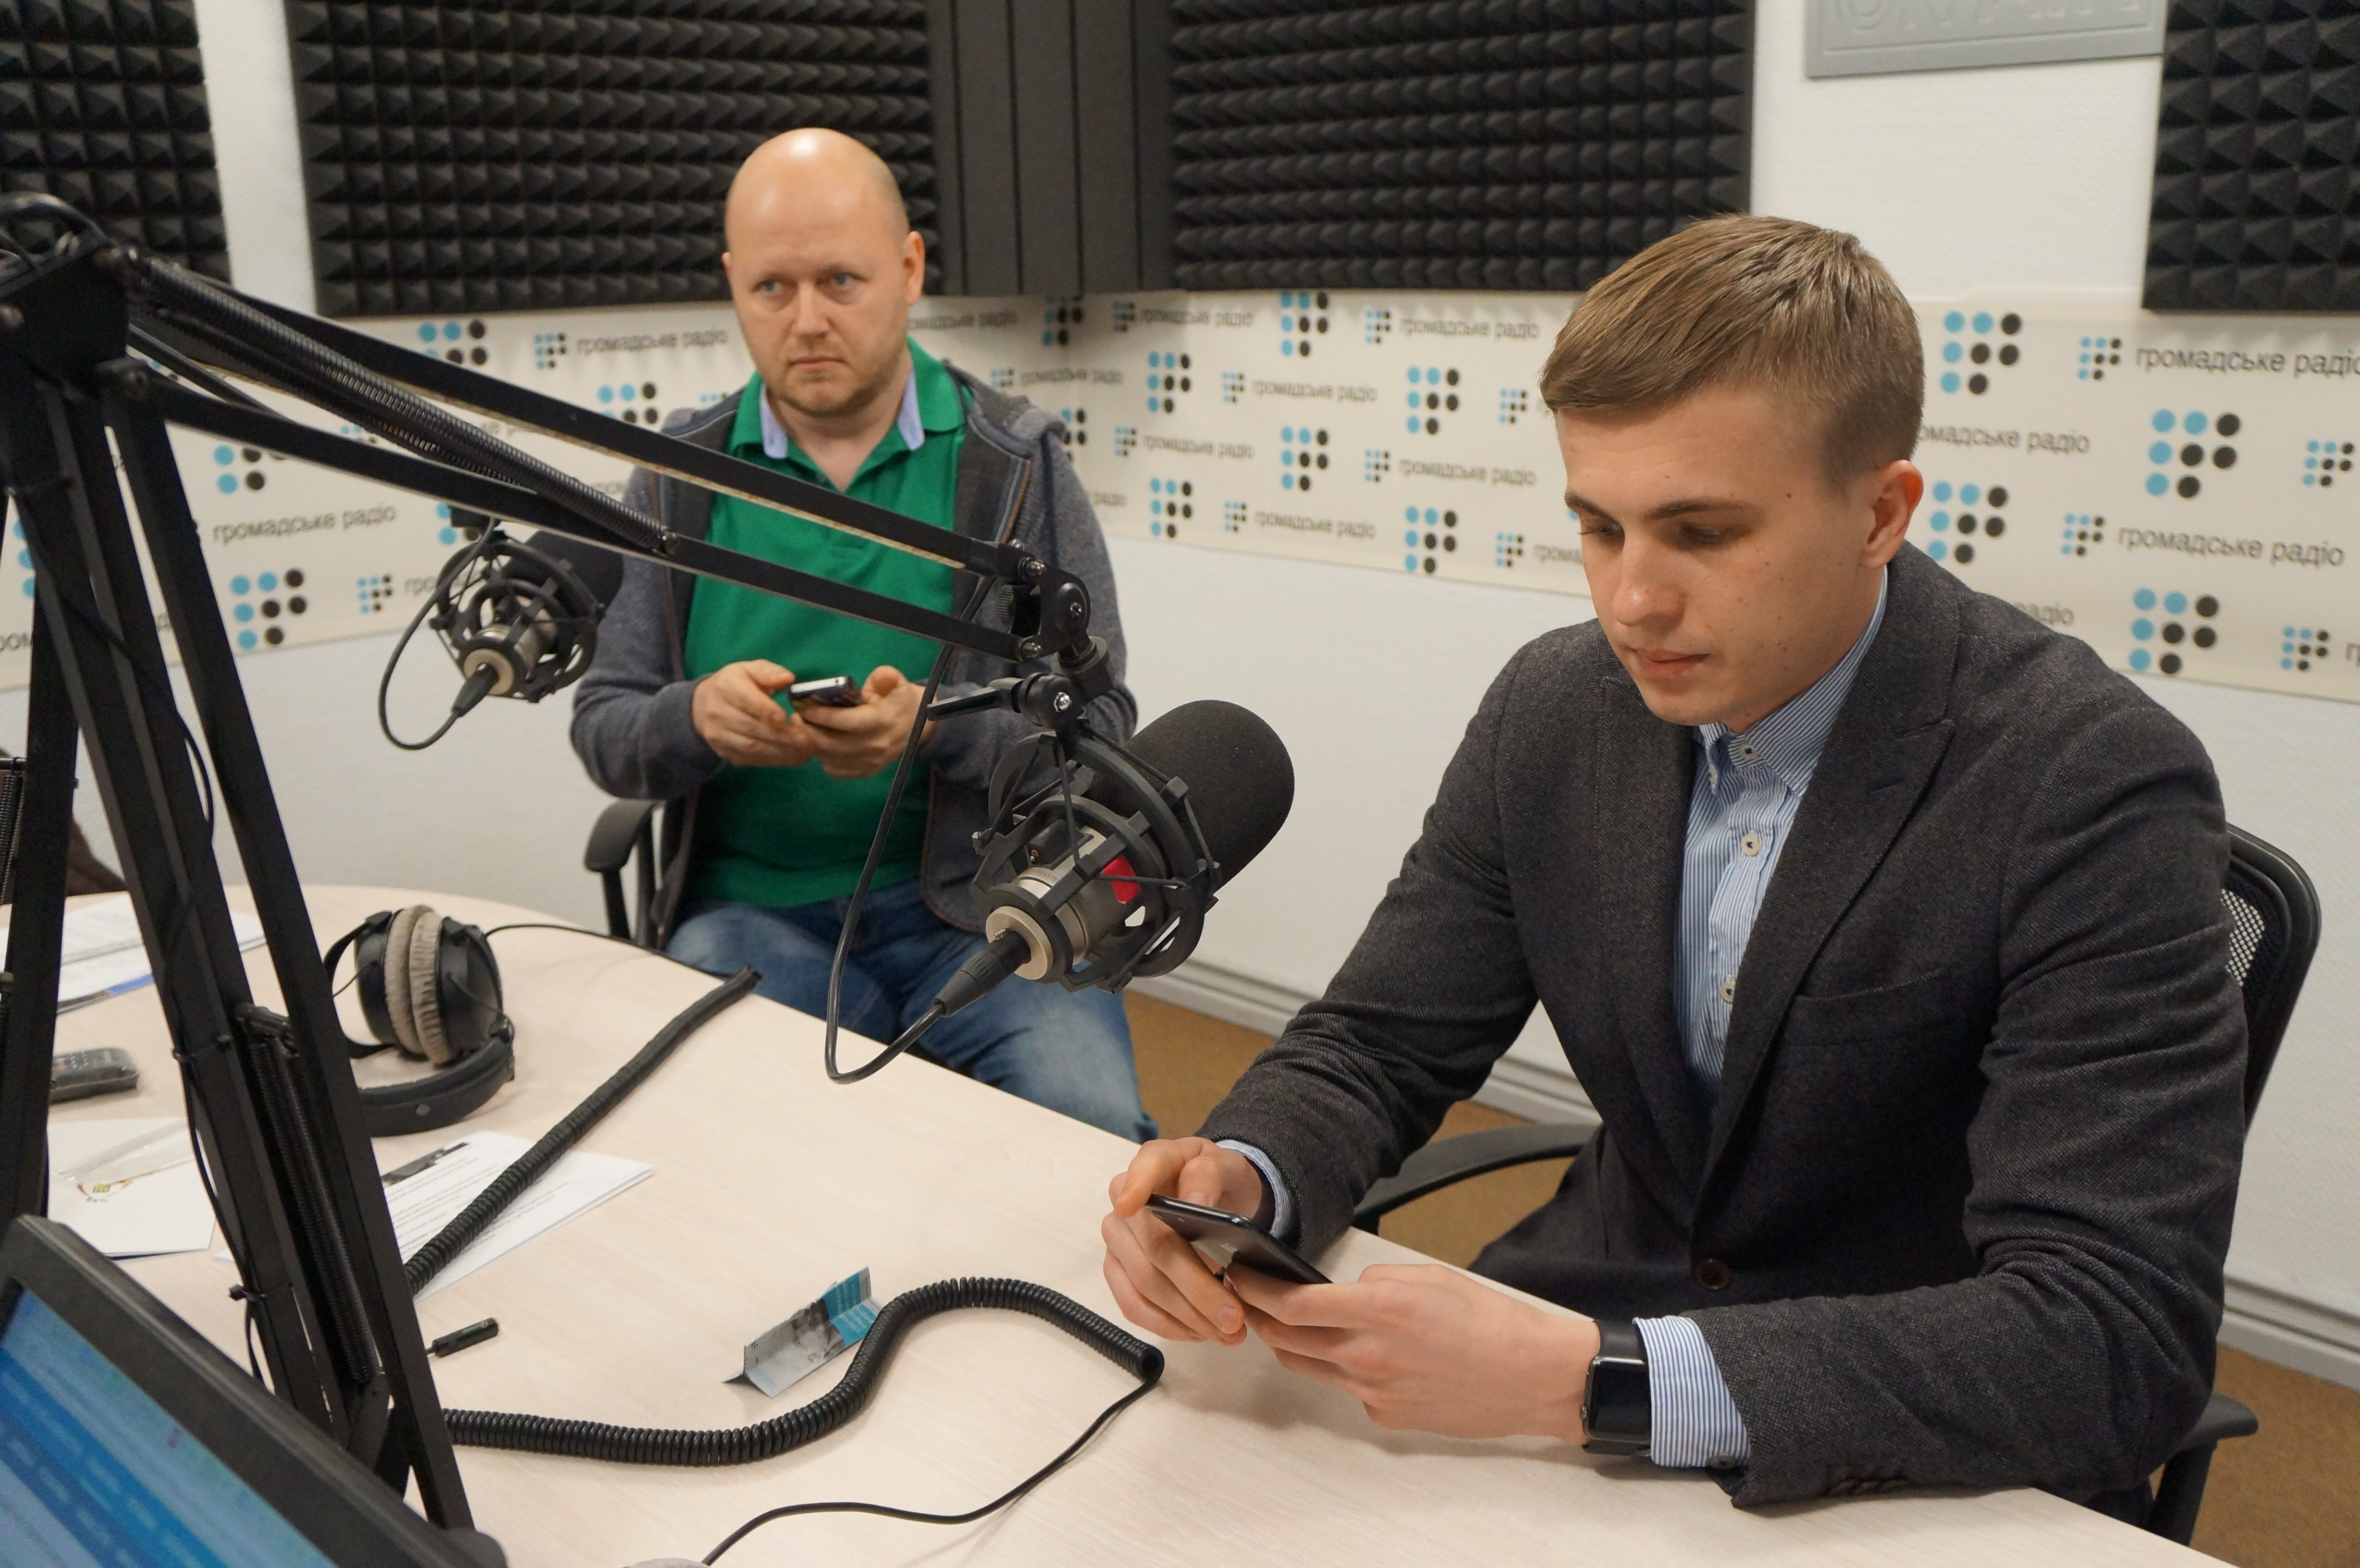 Технологии, применяемые АП на пресс-конференции Порошенко. Мнение журналистов